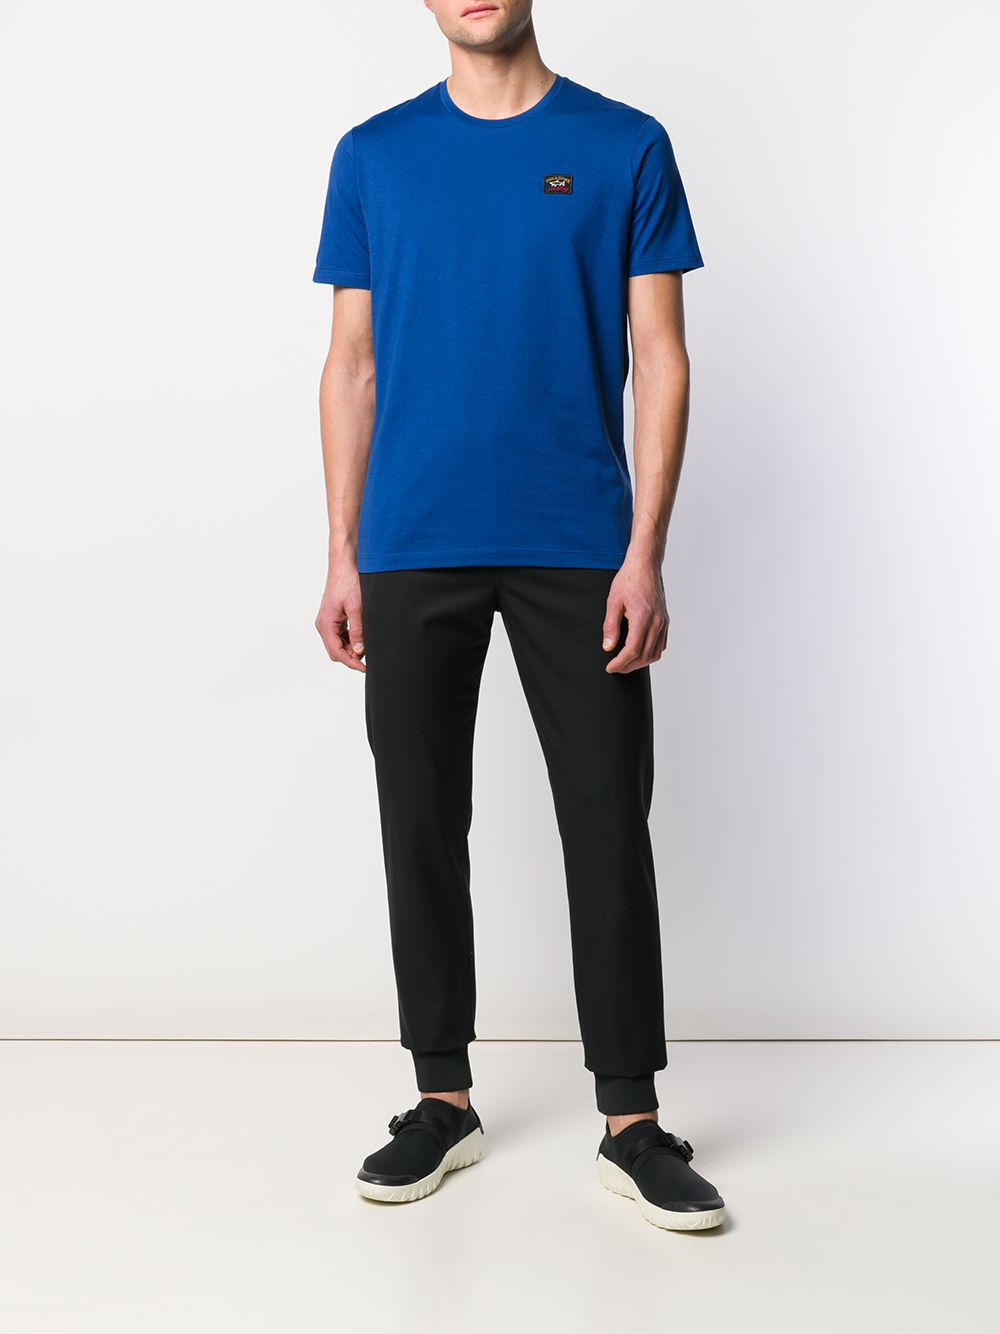  Paul & Shark Round Neck T-shirt - Blue 